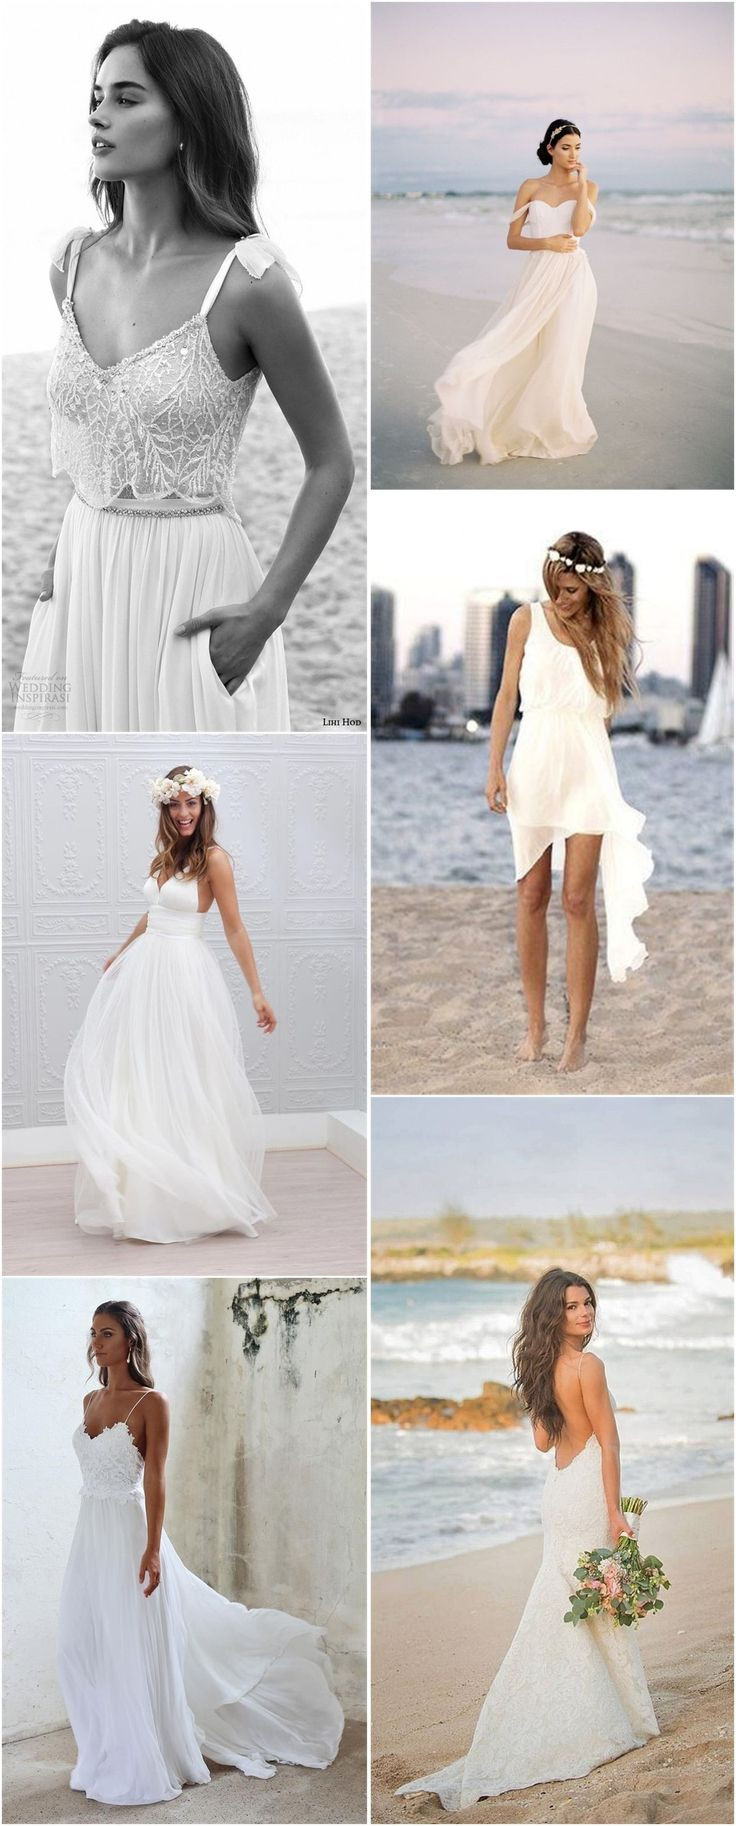 Beach Wedding Dress Ideas
 Best 25 Cruise wedding dress ideas on Pinterest